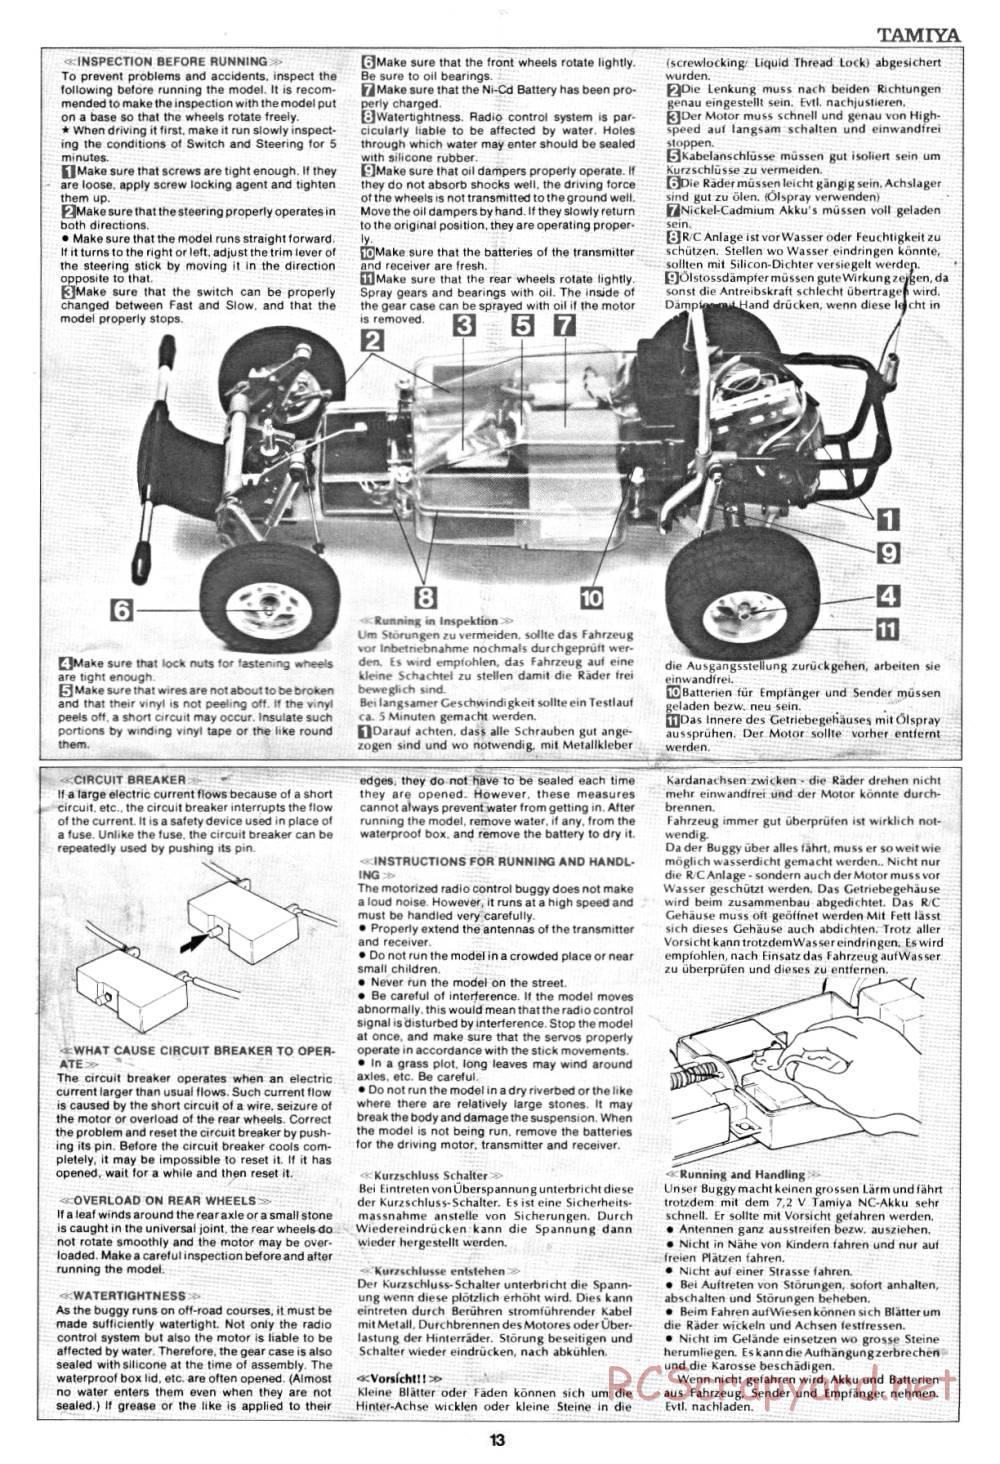 Tamiya - Rough Rider - 58015 - Manual - Page 13